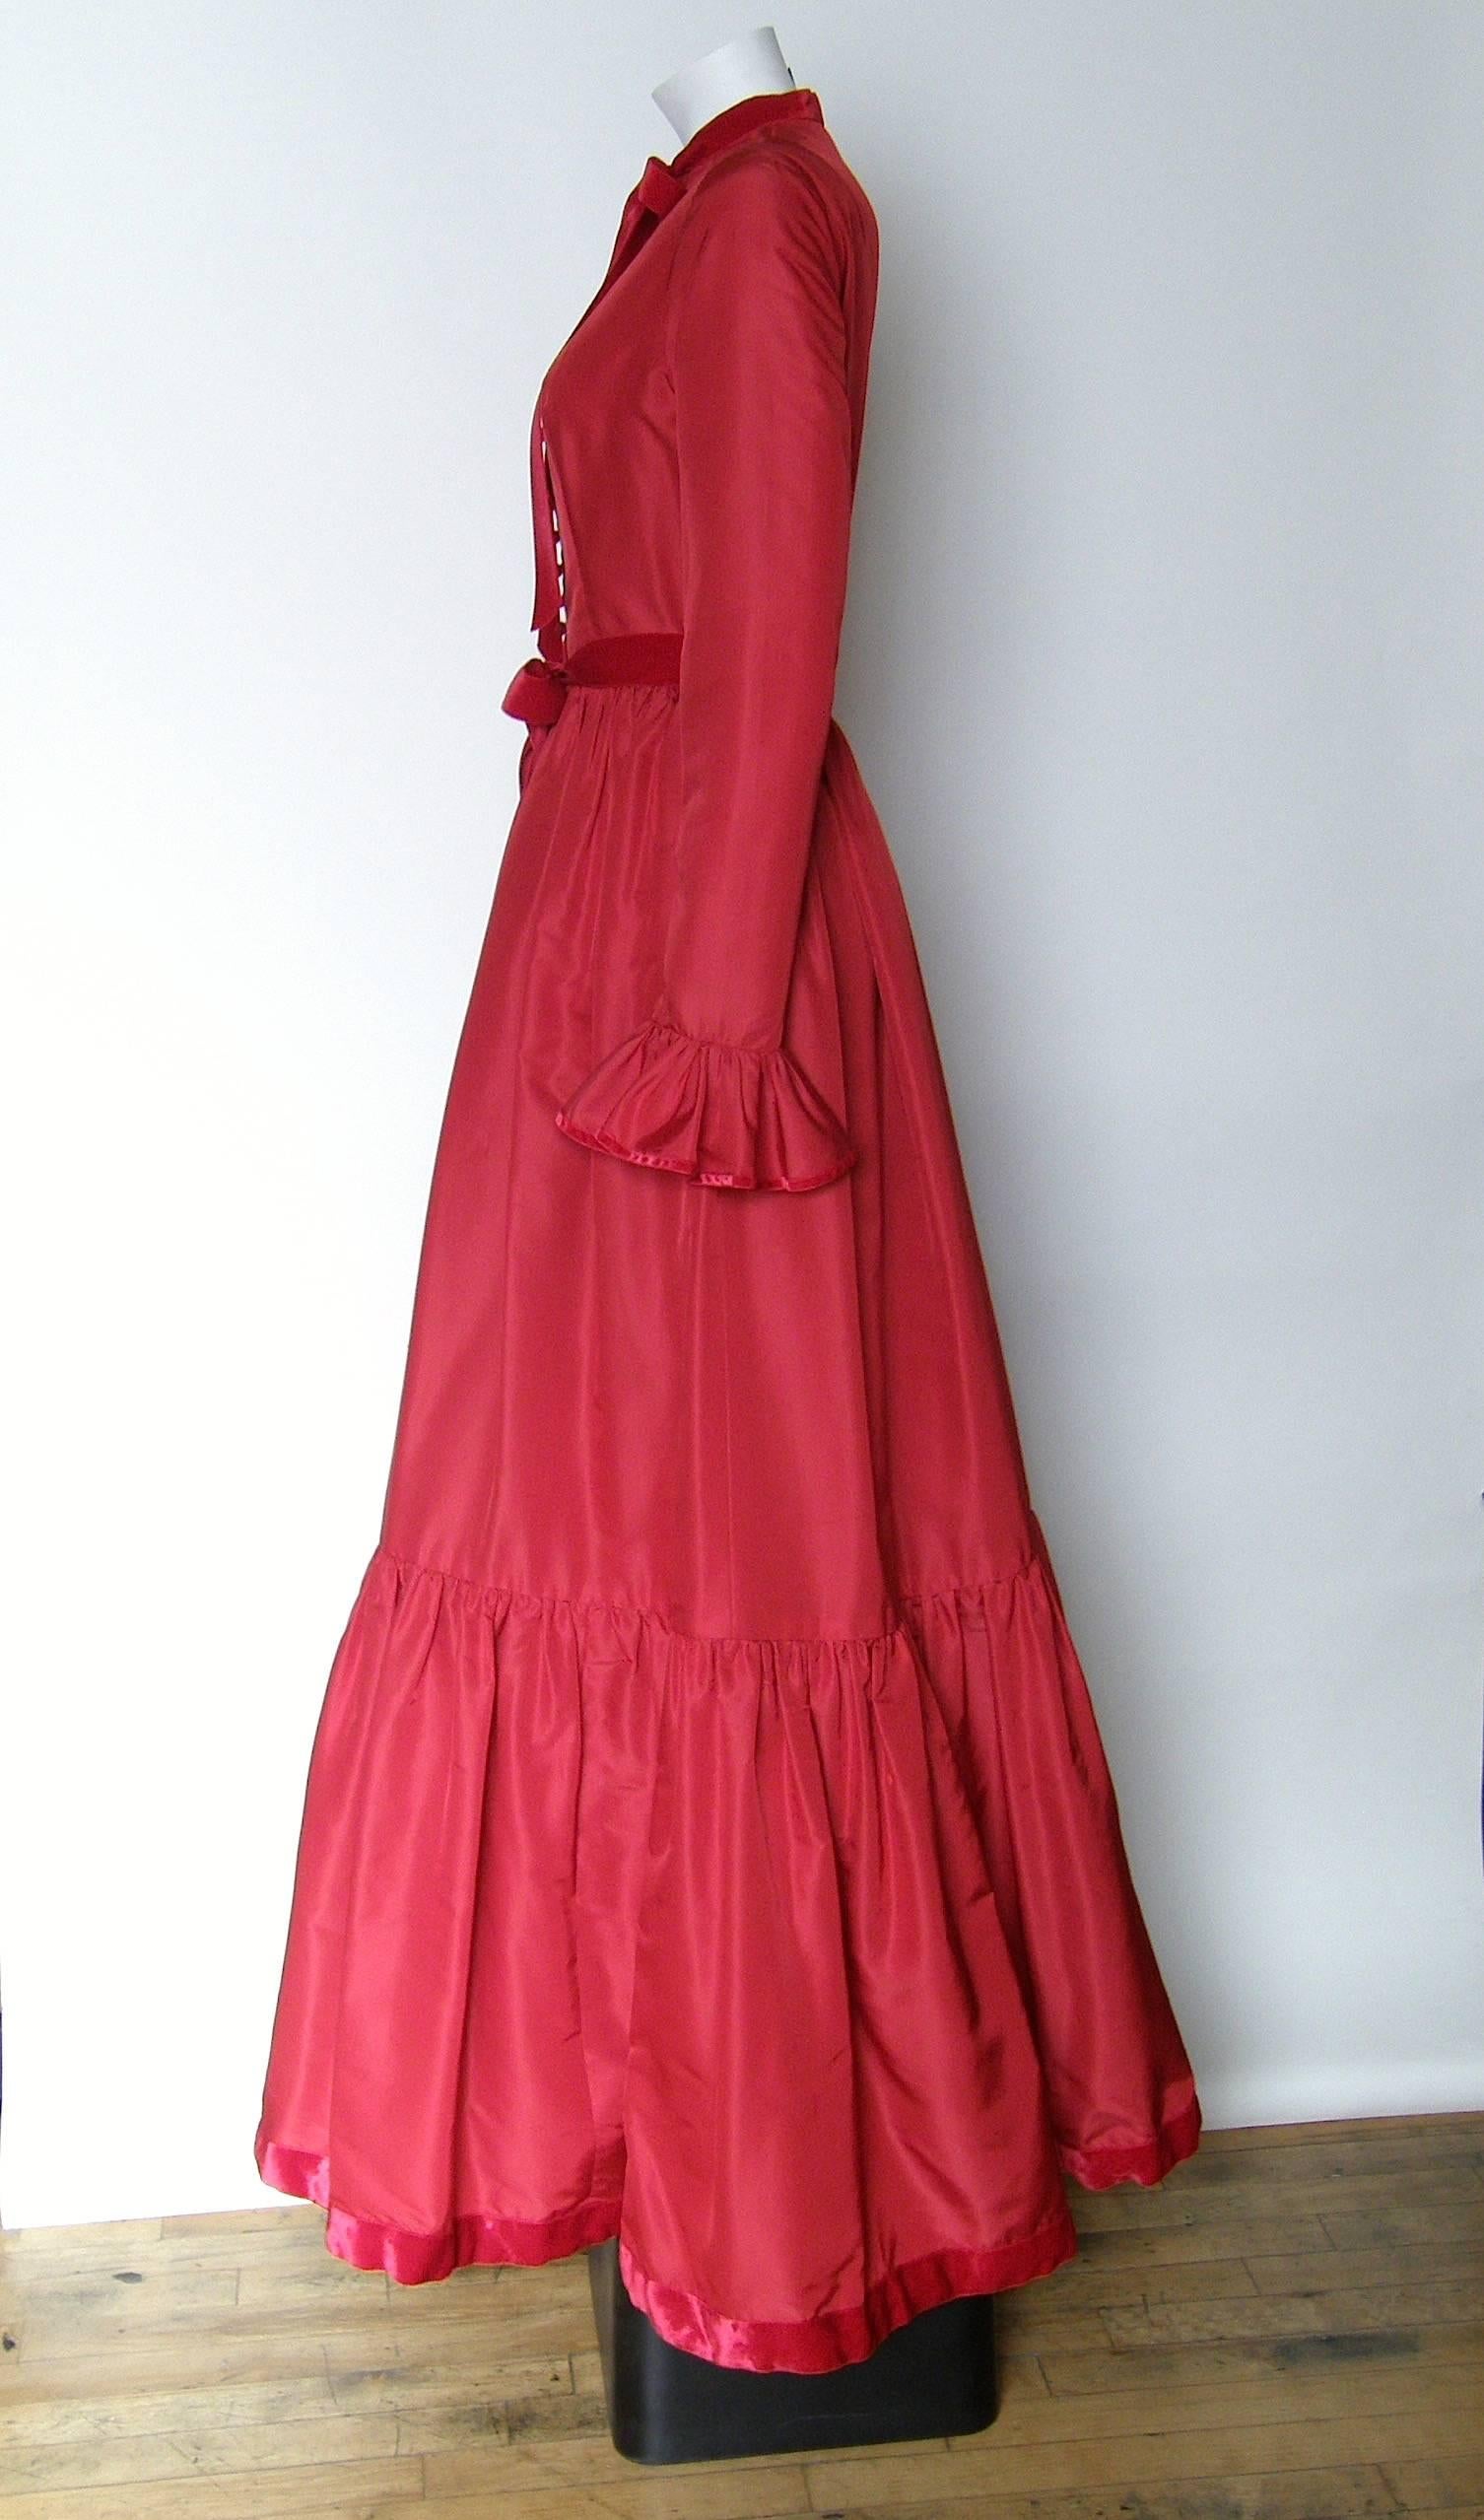 red taffeta dress